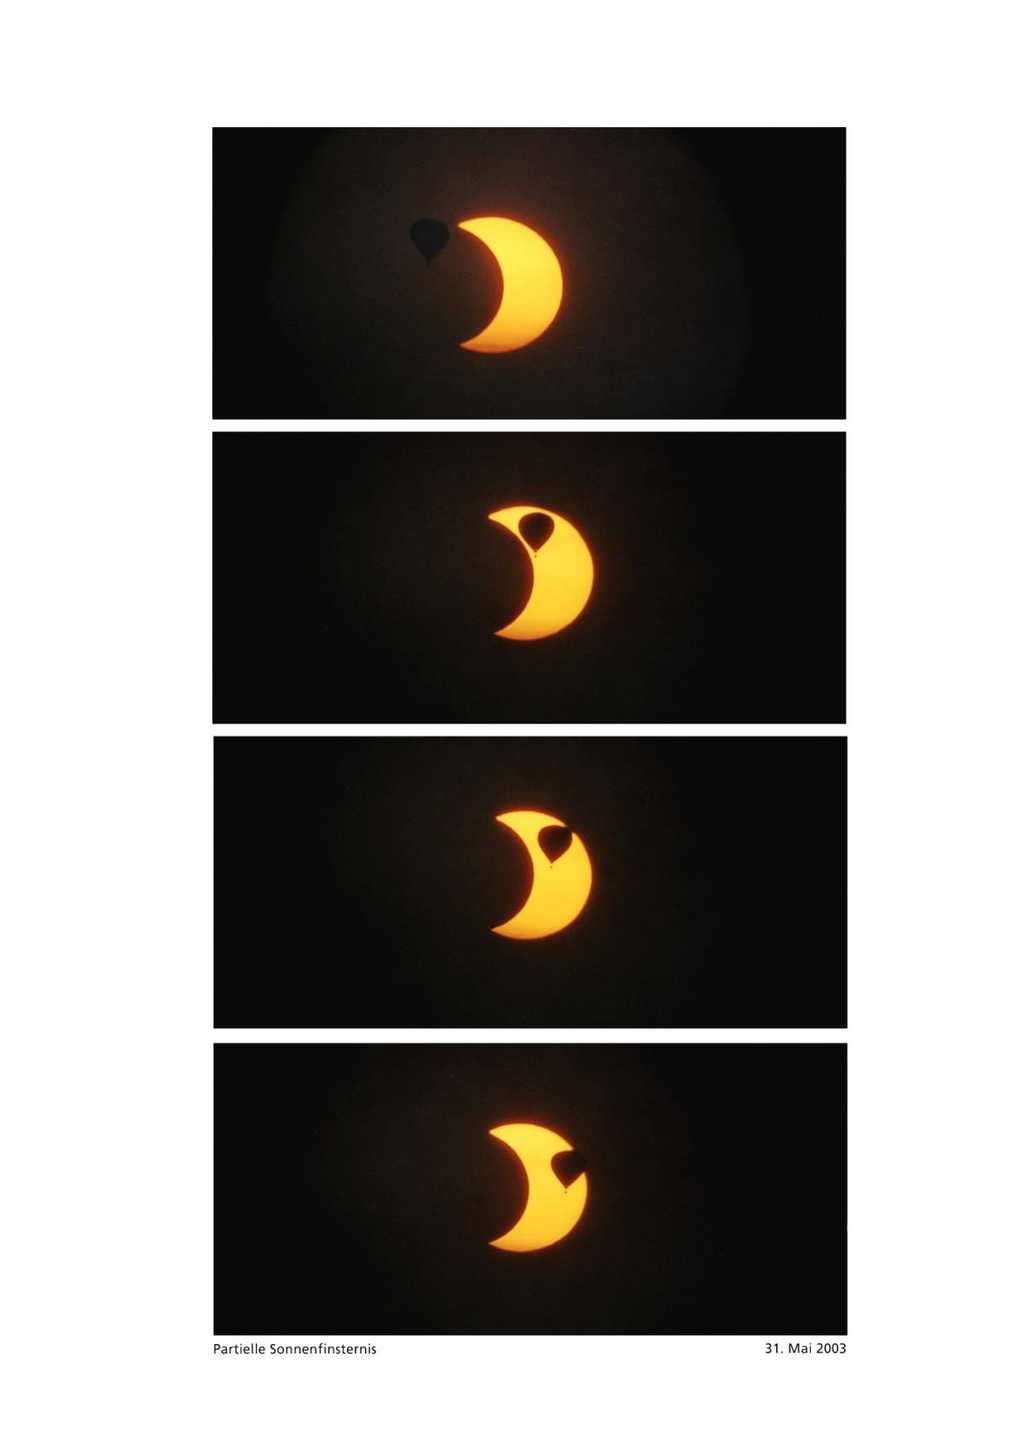 Eclipses solaires partielles